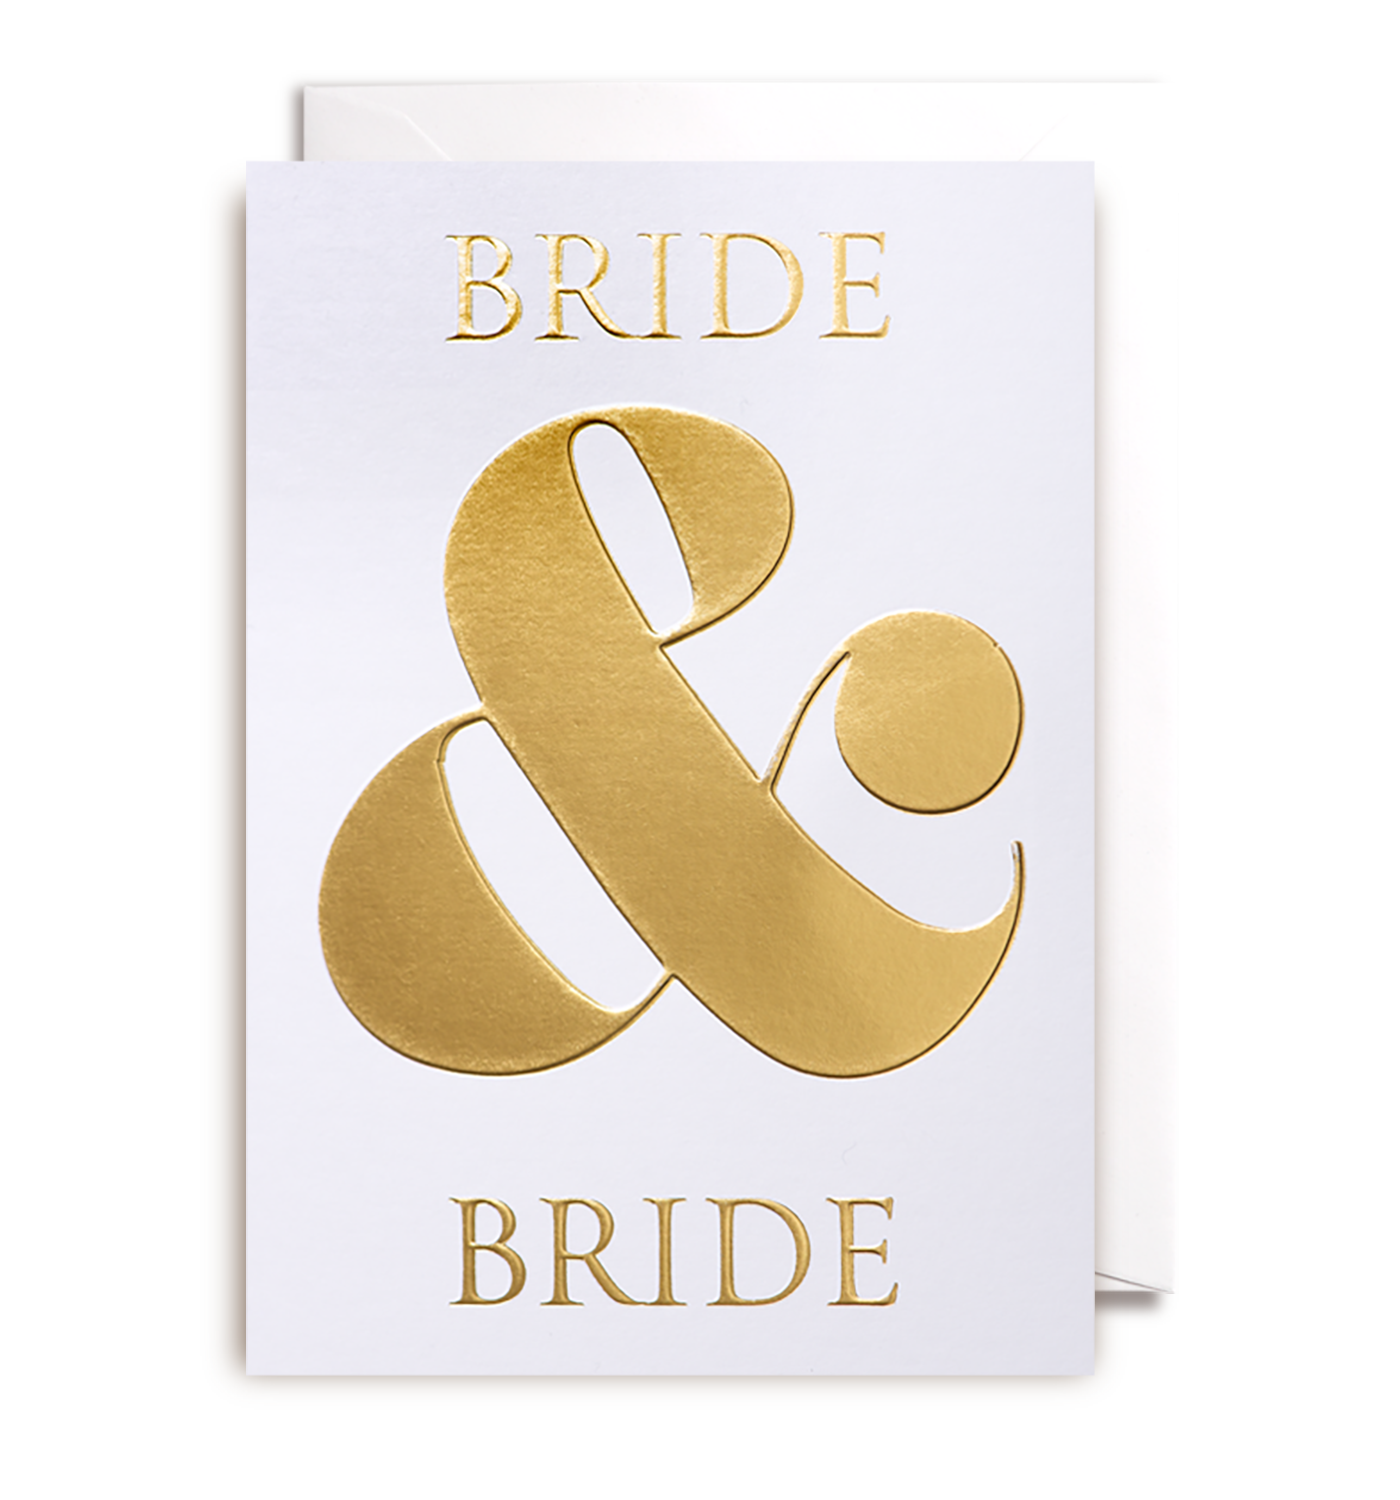 Bride & Bride - Card